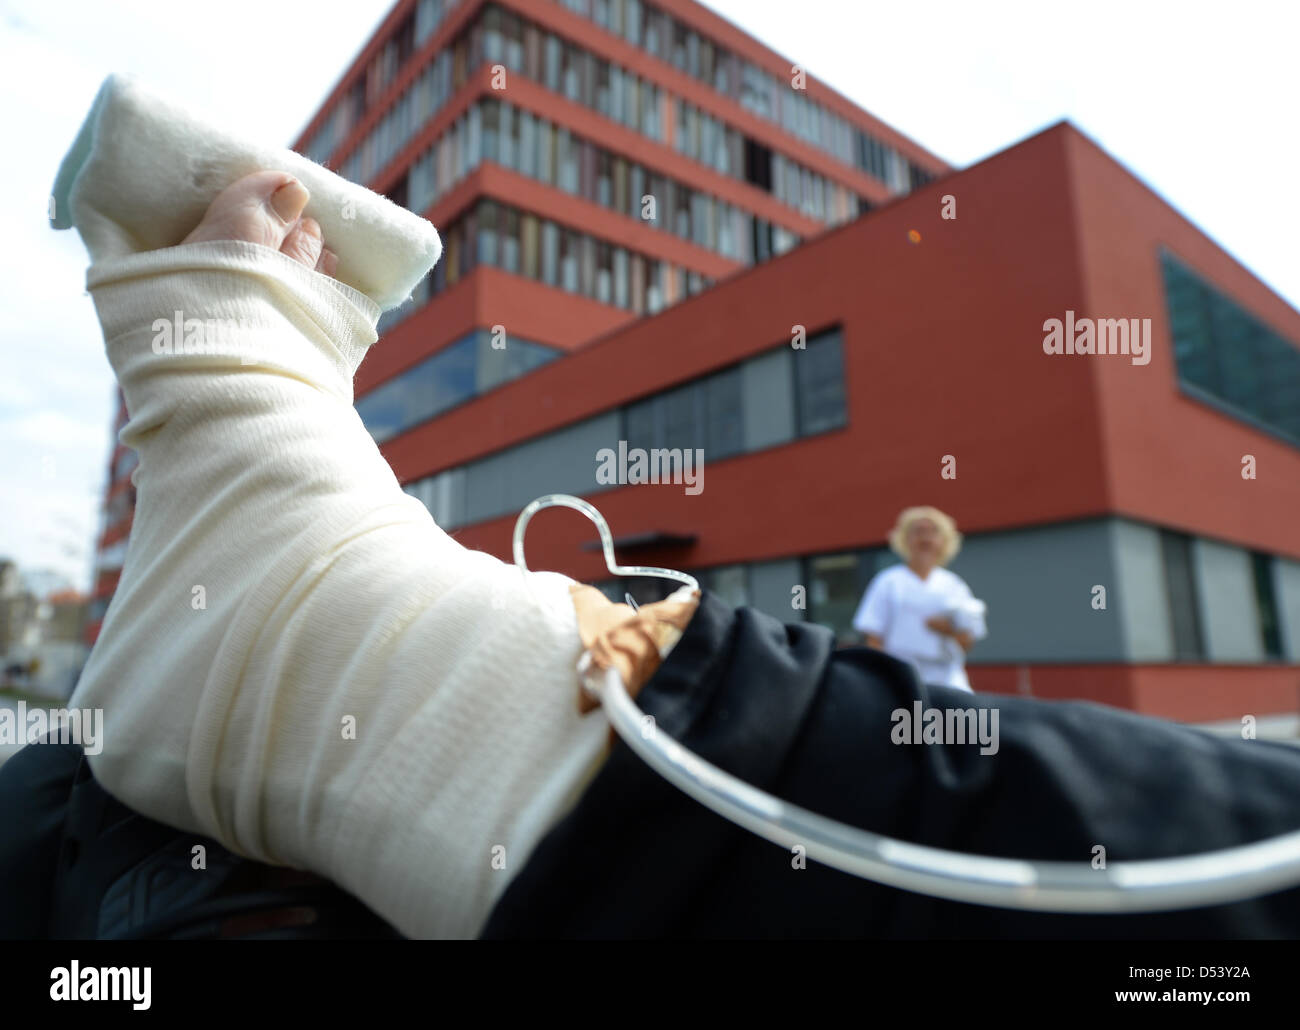 Illustrazione - un'immagine illustrata mostra un paziente con piede bendato davanti all'ospedale di Offenbach, Germania, 22 marzo 2013. La città di Offenbach ha un altra settimana per trovare un acquirente per l'ospedale che è in debito. Foto: Arne Dedert Foto Stock